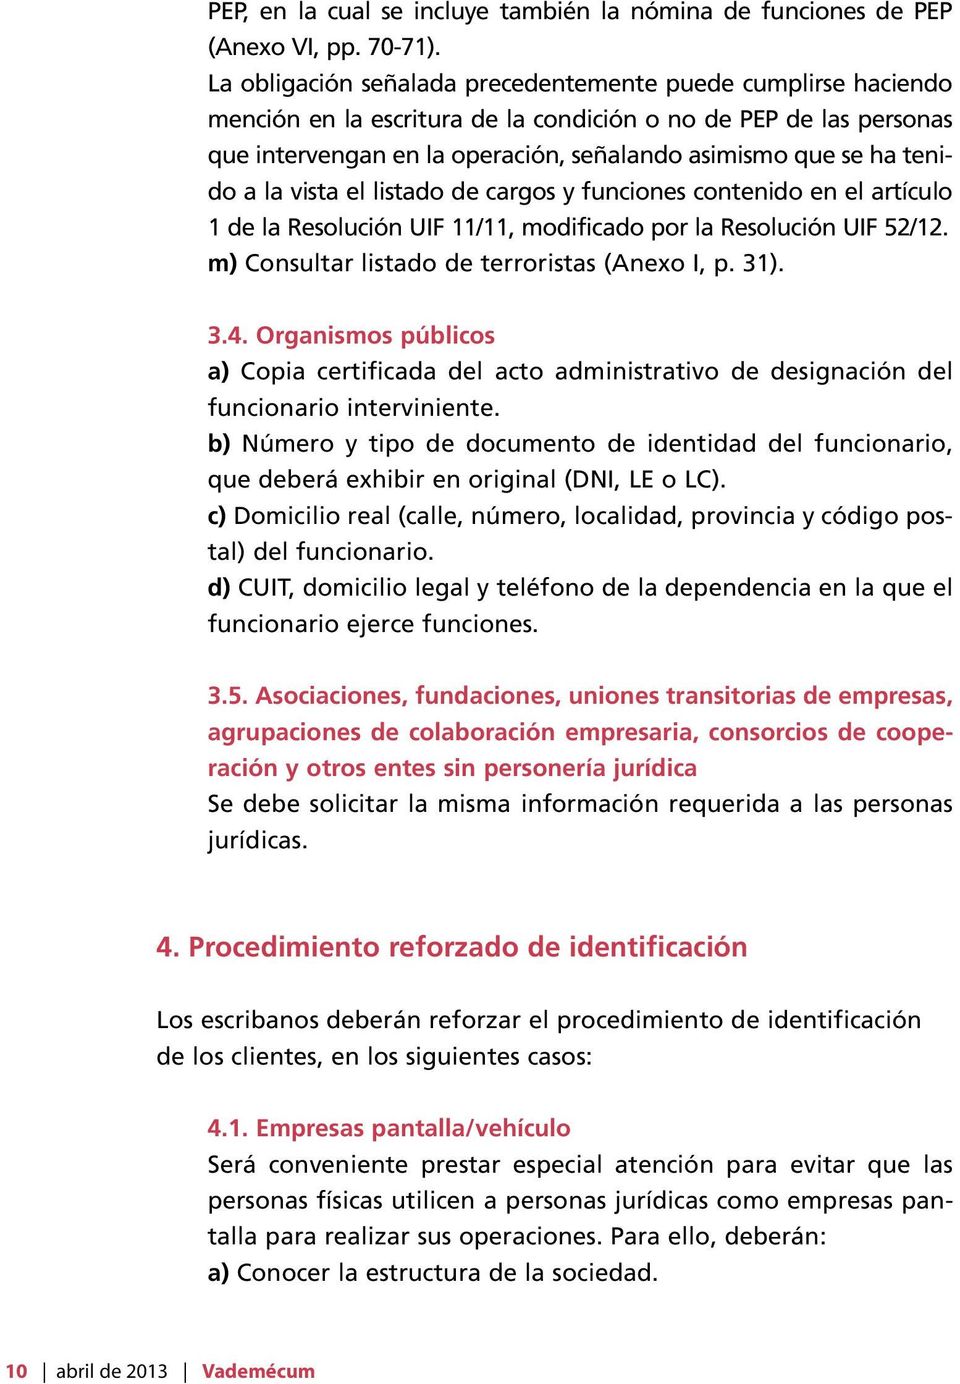 tenido a la vista el listado de cargos y funciones contenido en el artículo 1 de la Resolución UIF 11/11, modificado por la Resolución UIF 52/12. m) Consultar listado de terroristas (Anexo I, p. 31).